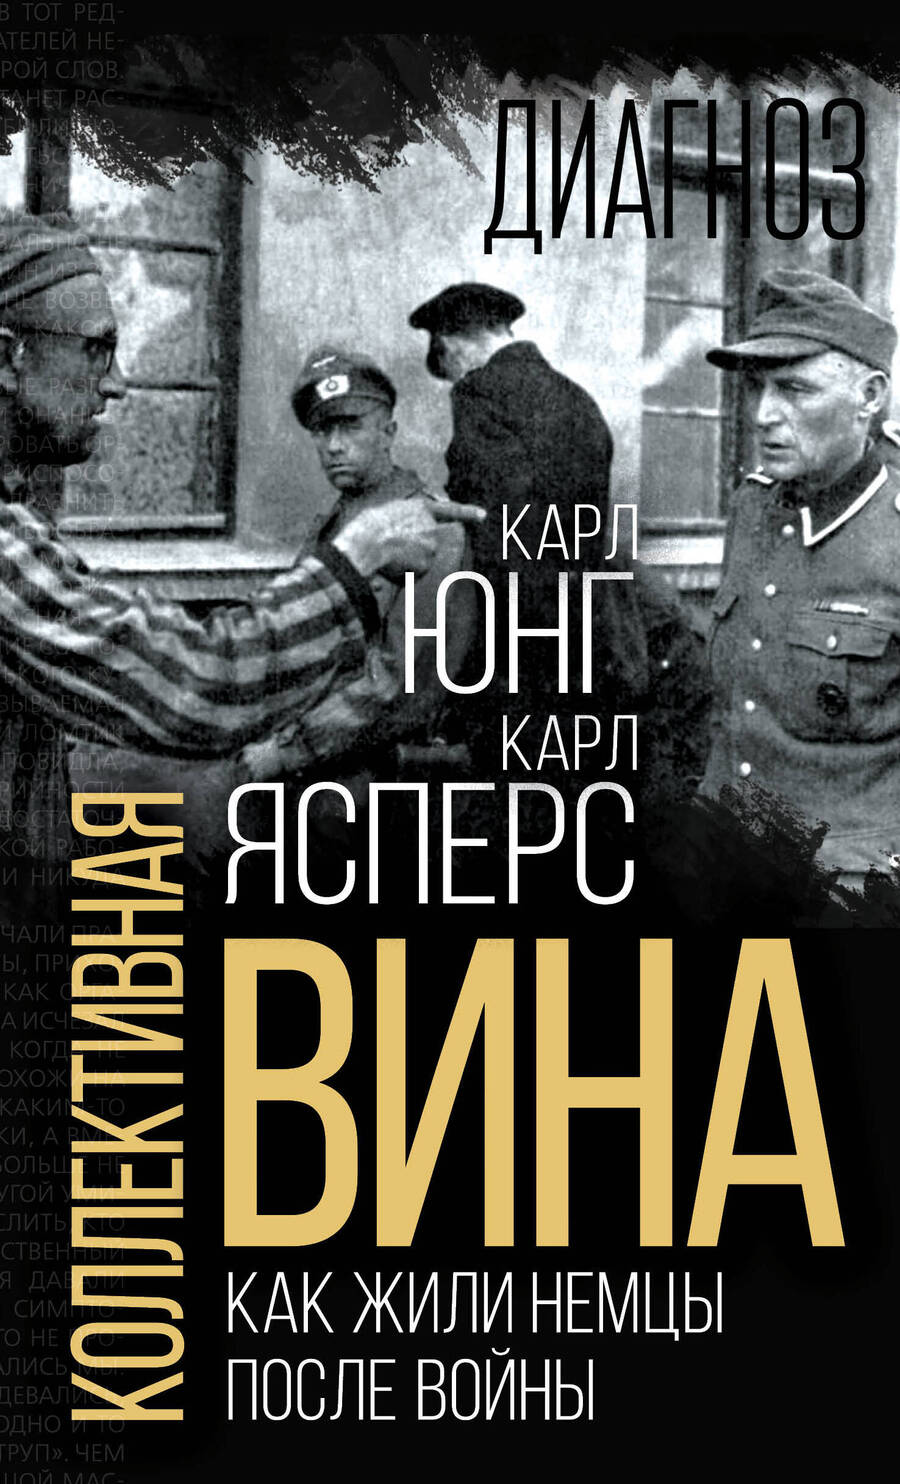 Обложка книги "Ясперс, Юнг: Коллективная вина. Как жили немцы после войны"